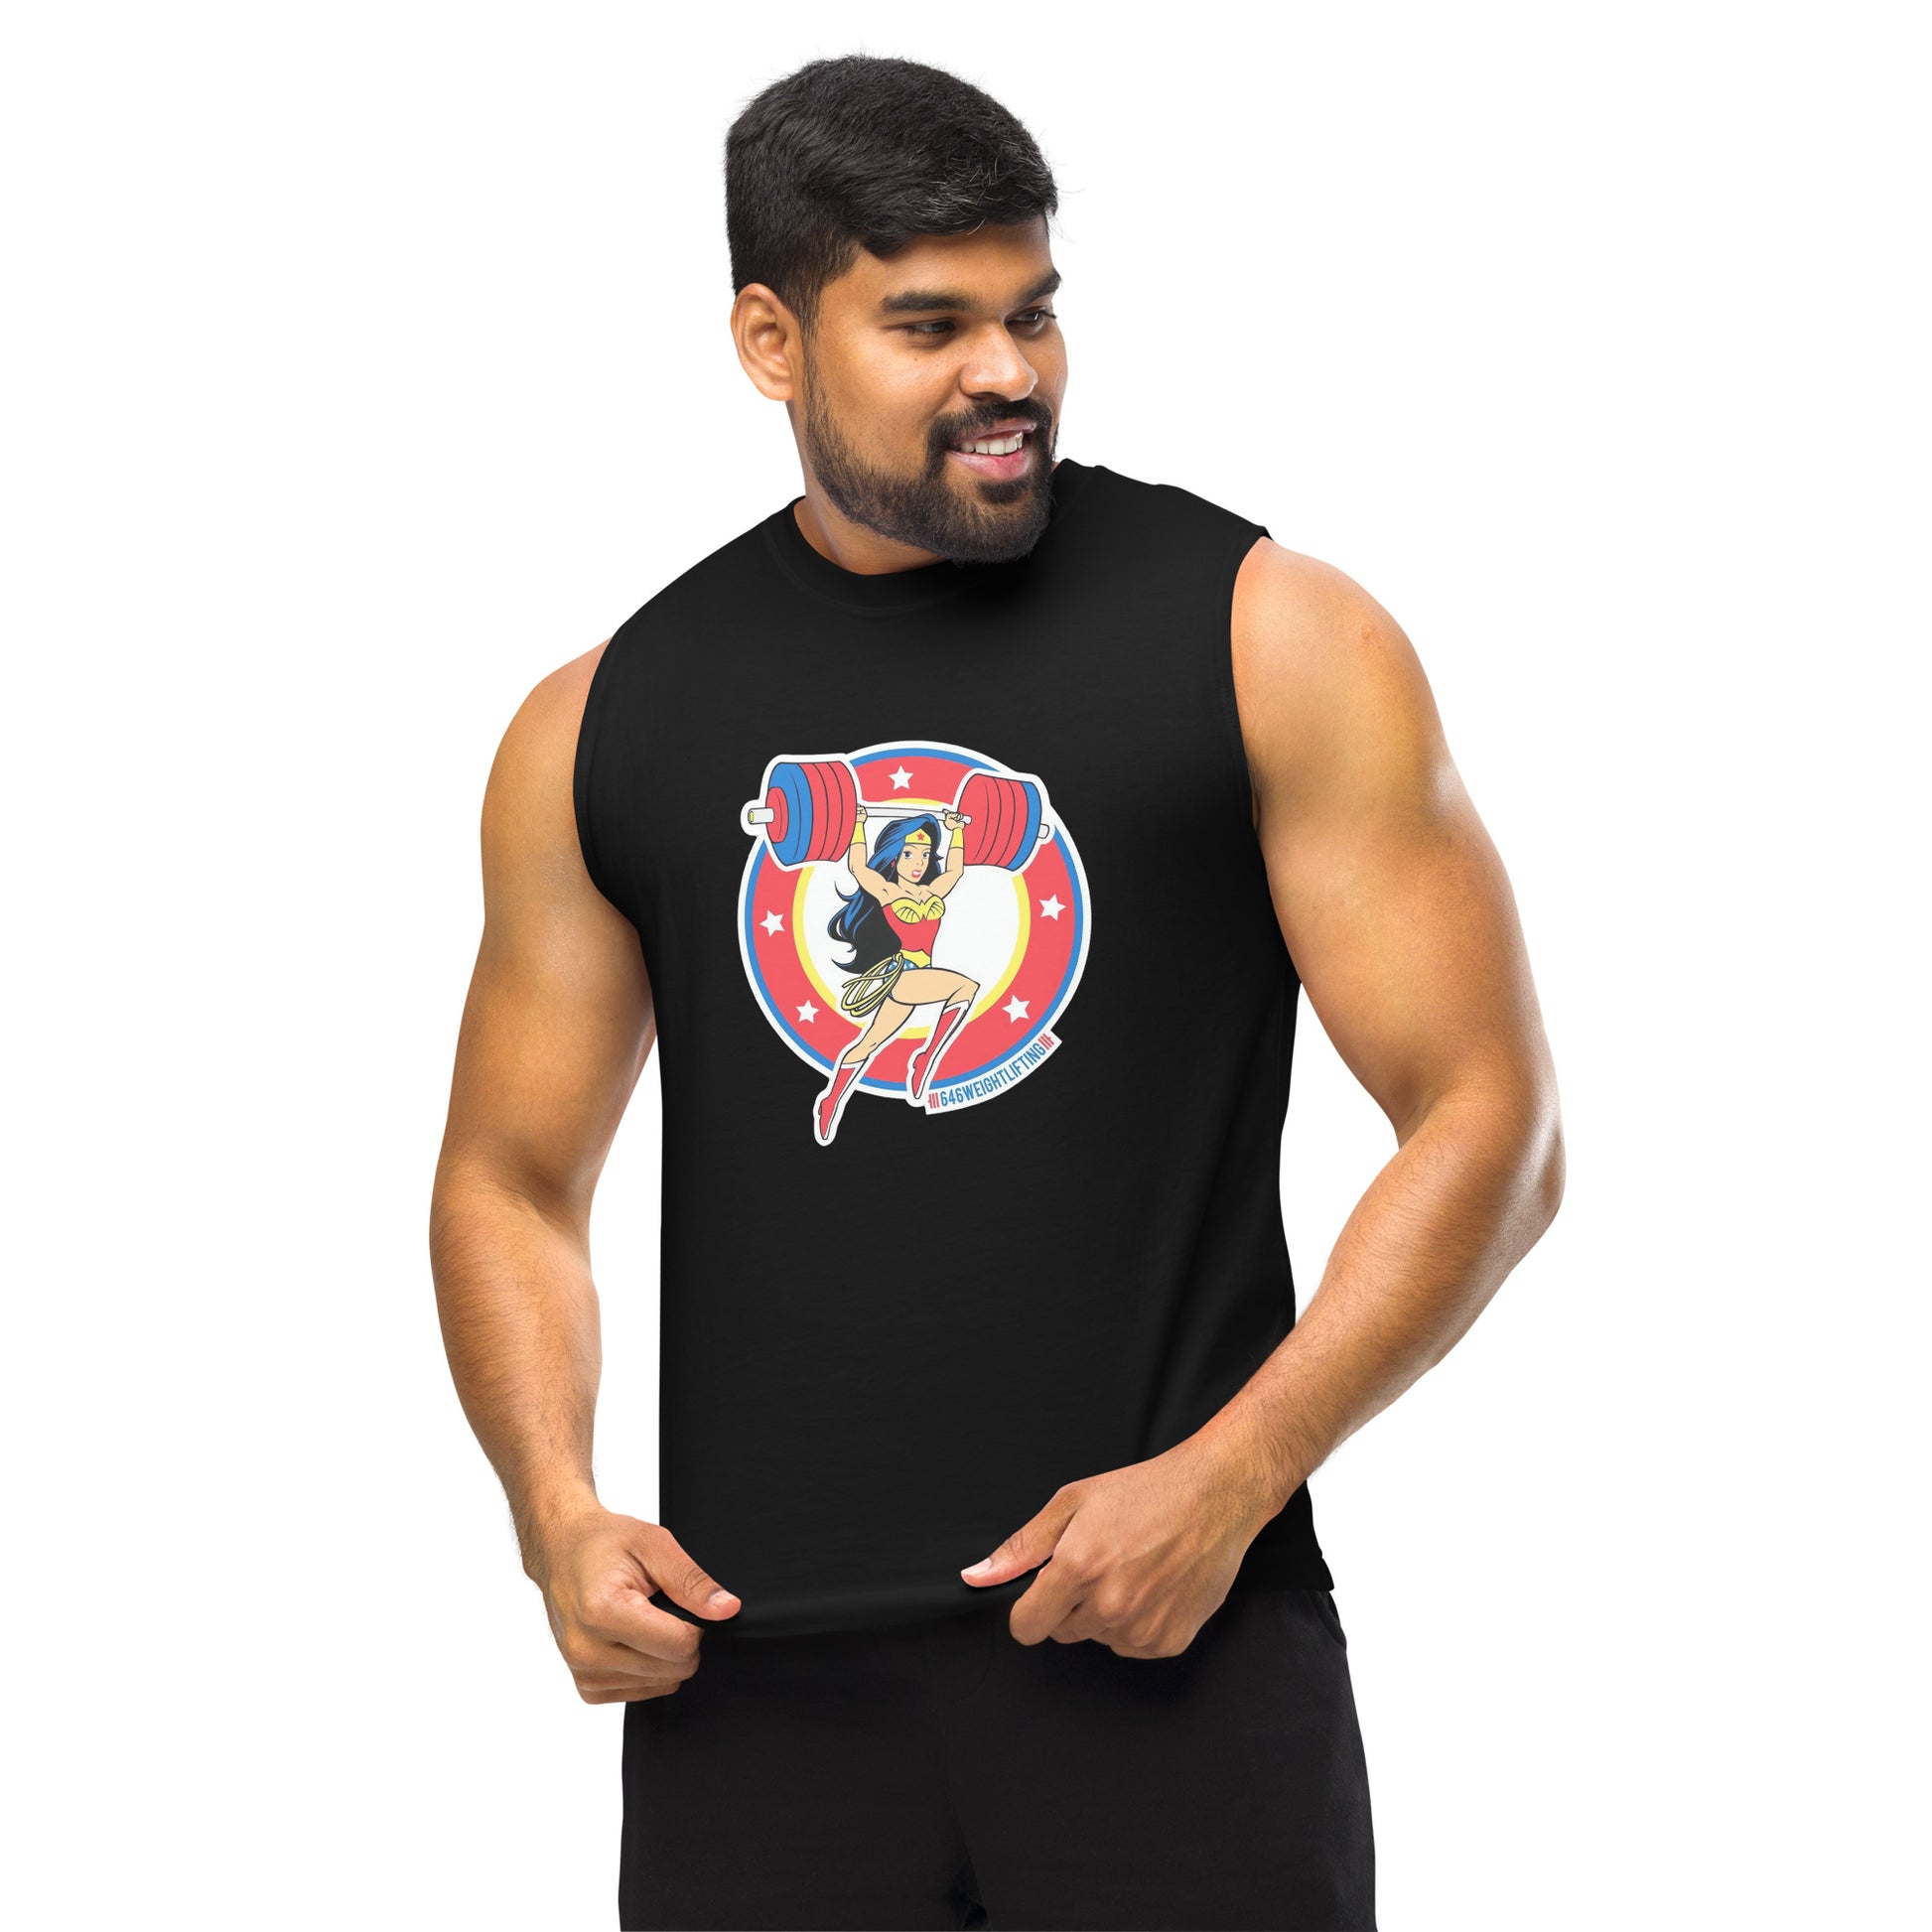 Camiseta sin mangas perfecta para entrenar, Camiseta Wonder Weightlifting comprala en línea y experimenta el mejor servicio al cliente. 